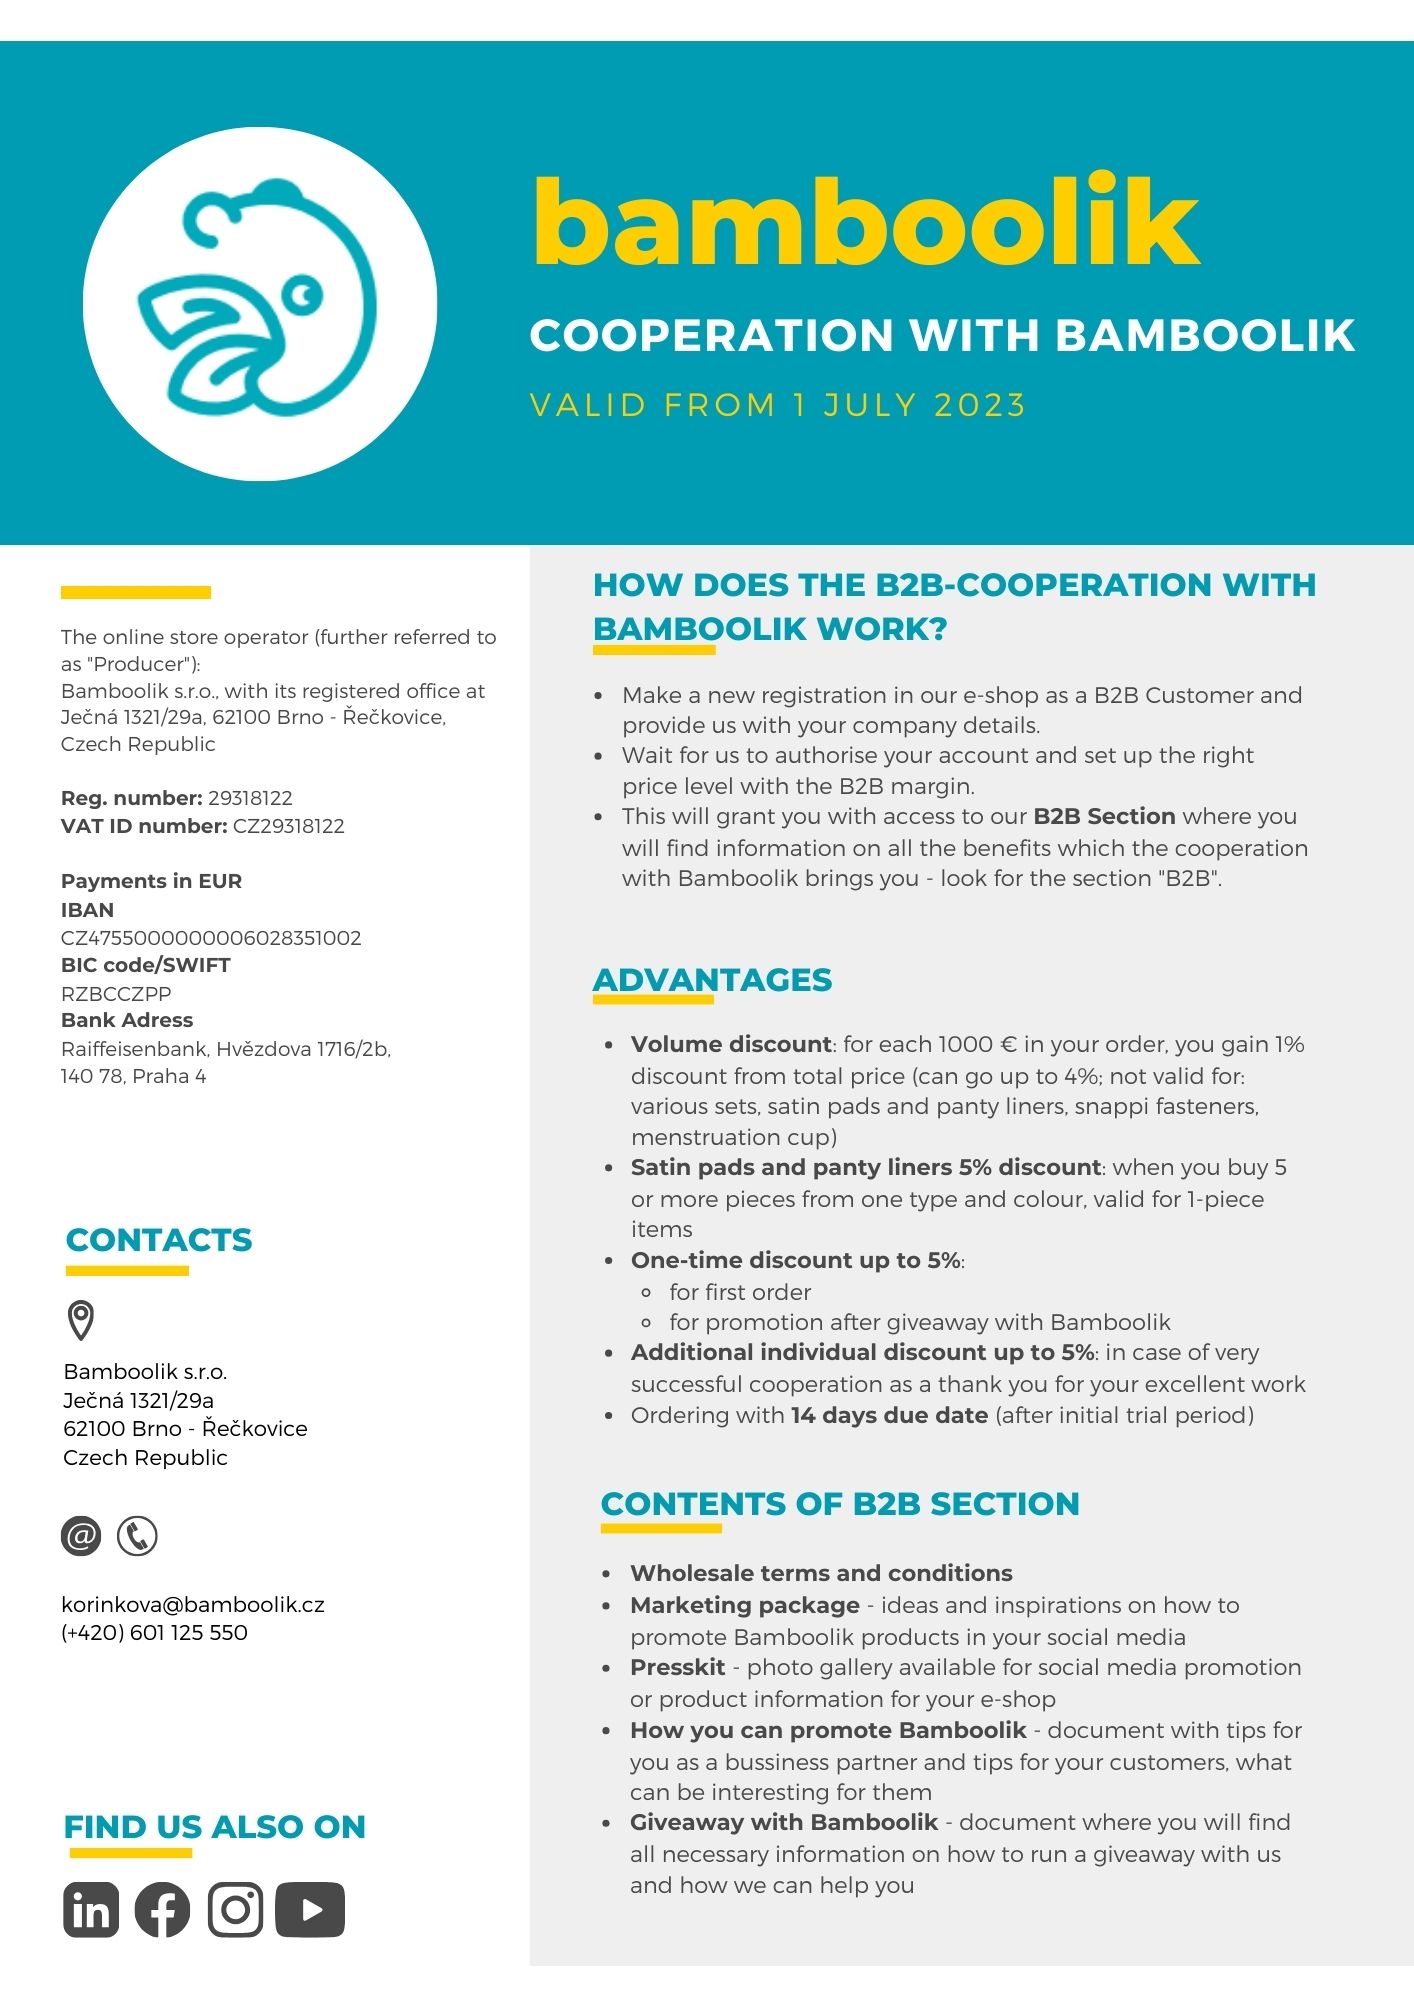 Cooperation with Bamboolik